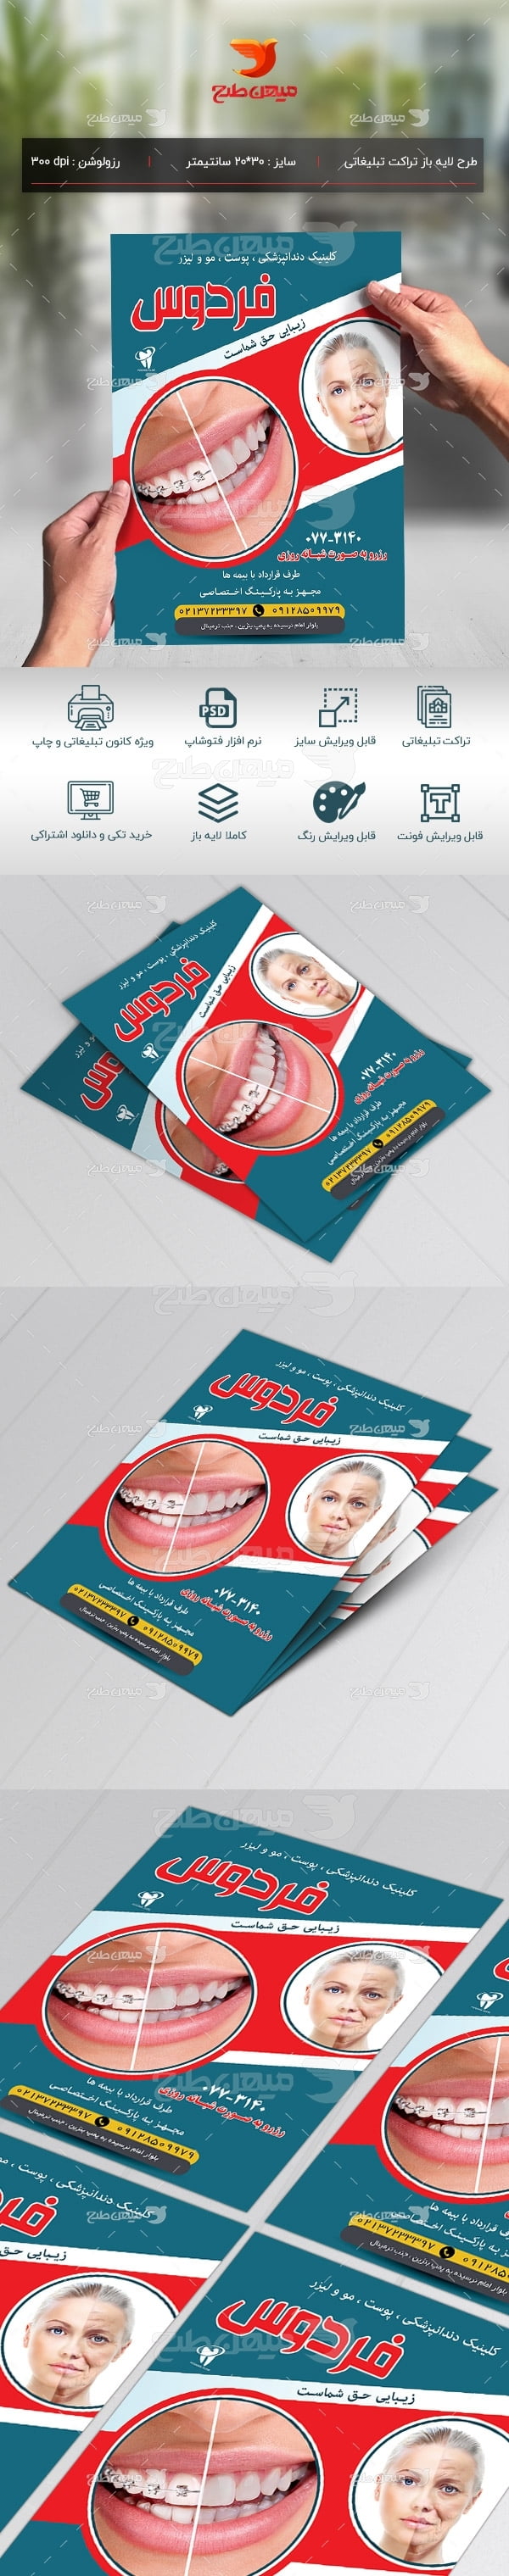 طرح لایه باز تراکت تبلیغاتی کلینیک دندانپزشکی، پوست و مو و لیزر فردوس